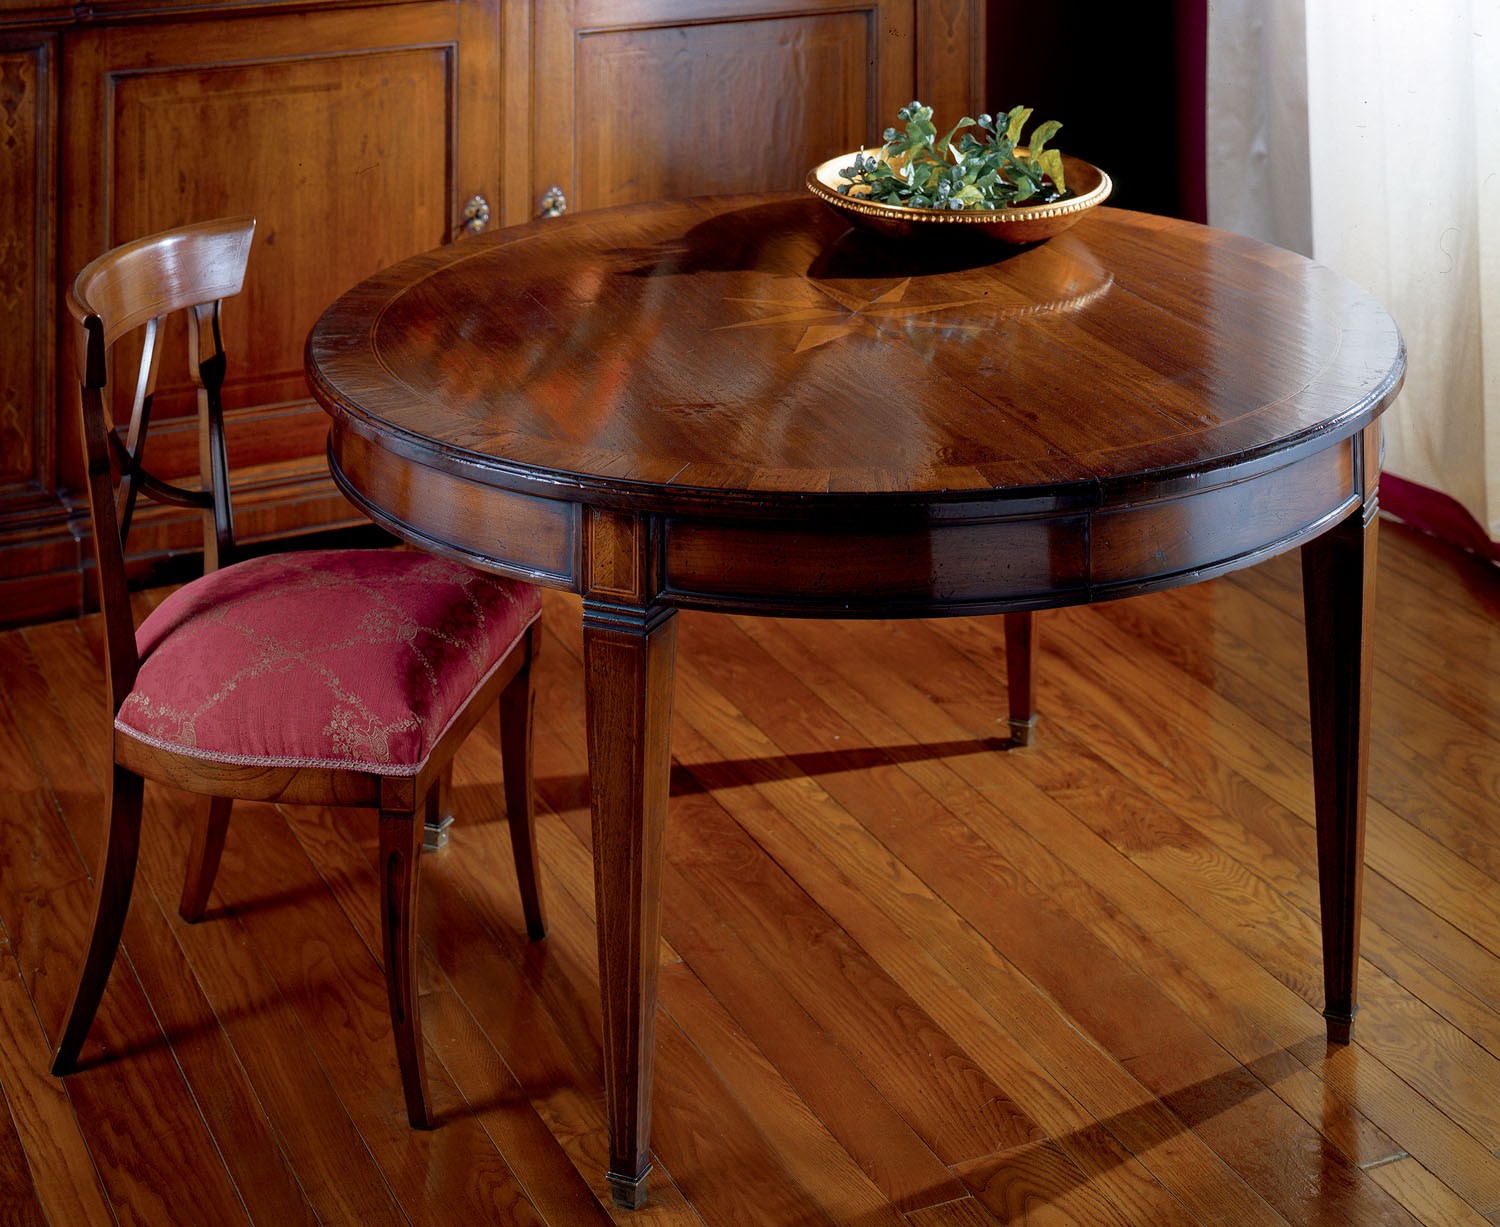 Tavolo rotondo con stella centrale intarsiata - Art. 156 - Arredamento classico DecorArt